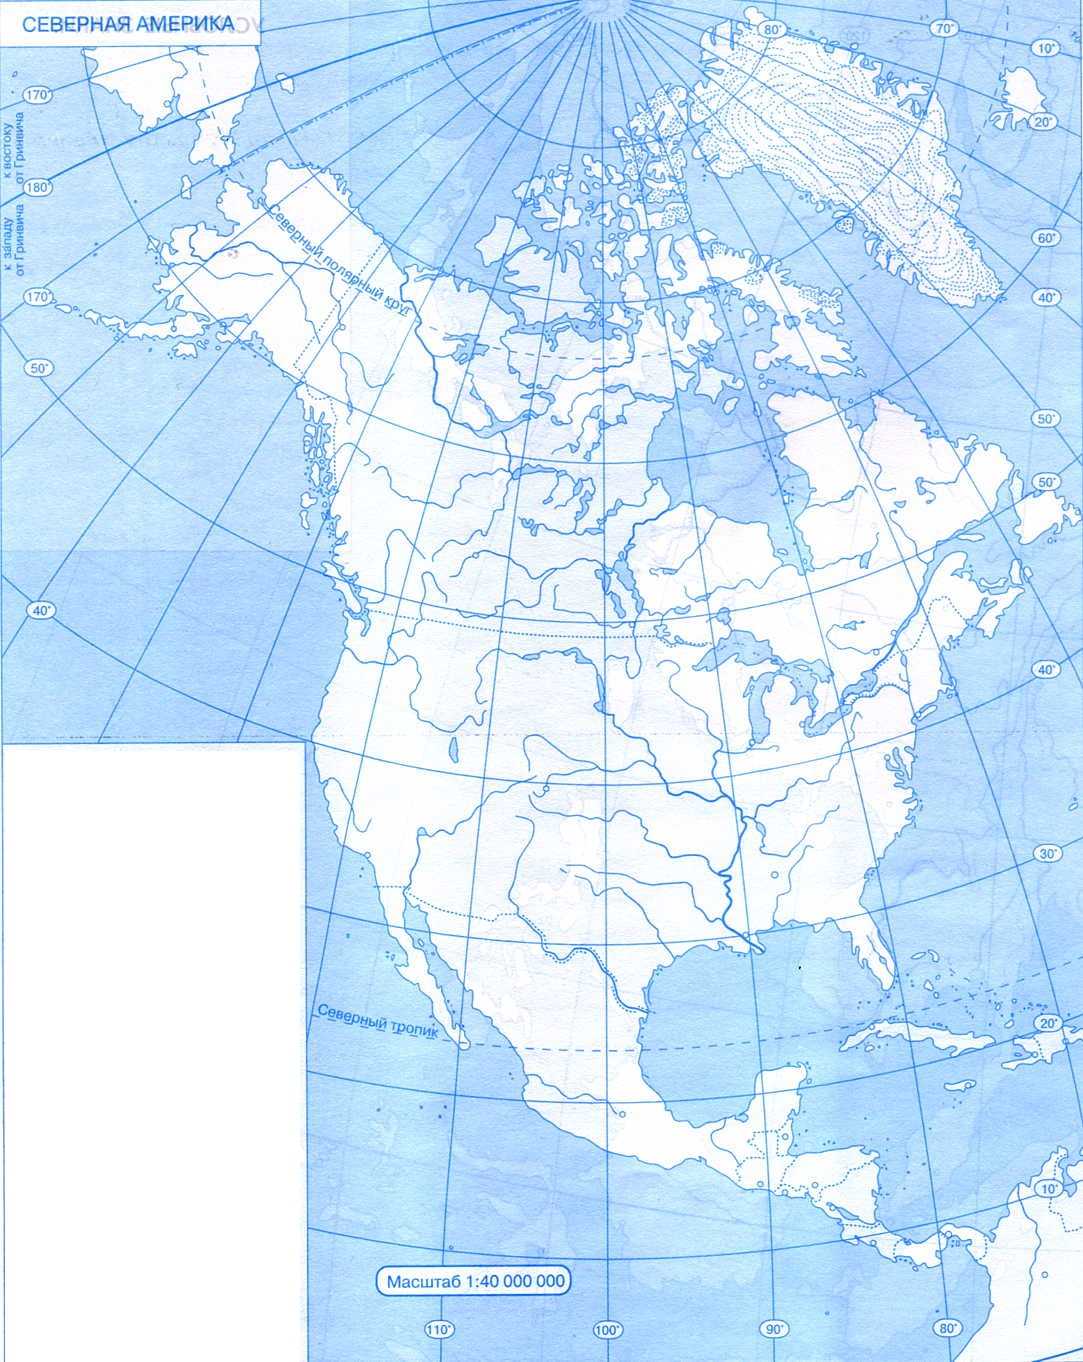 Столицы северной америки на контурной карте. Карта Северной Америки контурная карта. Контурная ката Северной Омерики\. Контурная карта севернойтамерики. Контурная карта севеонойа мерики.